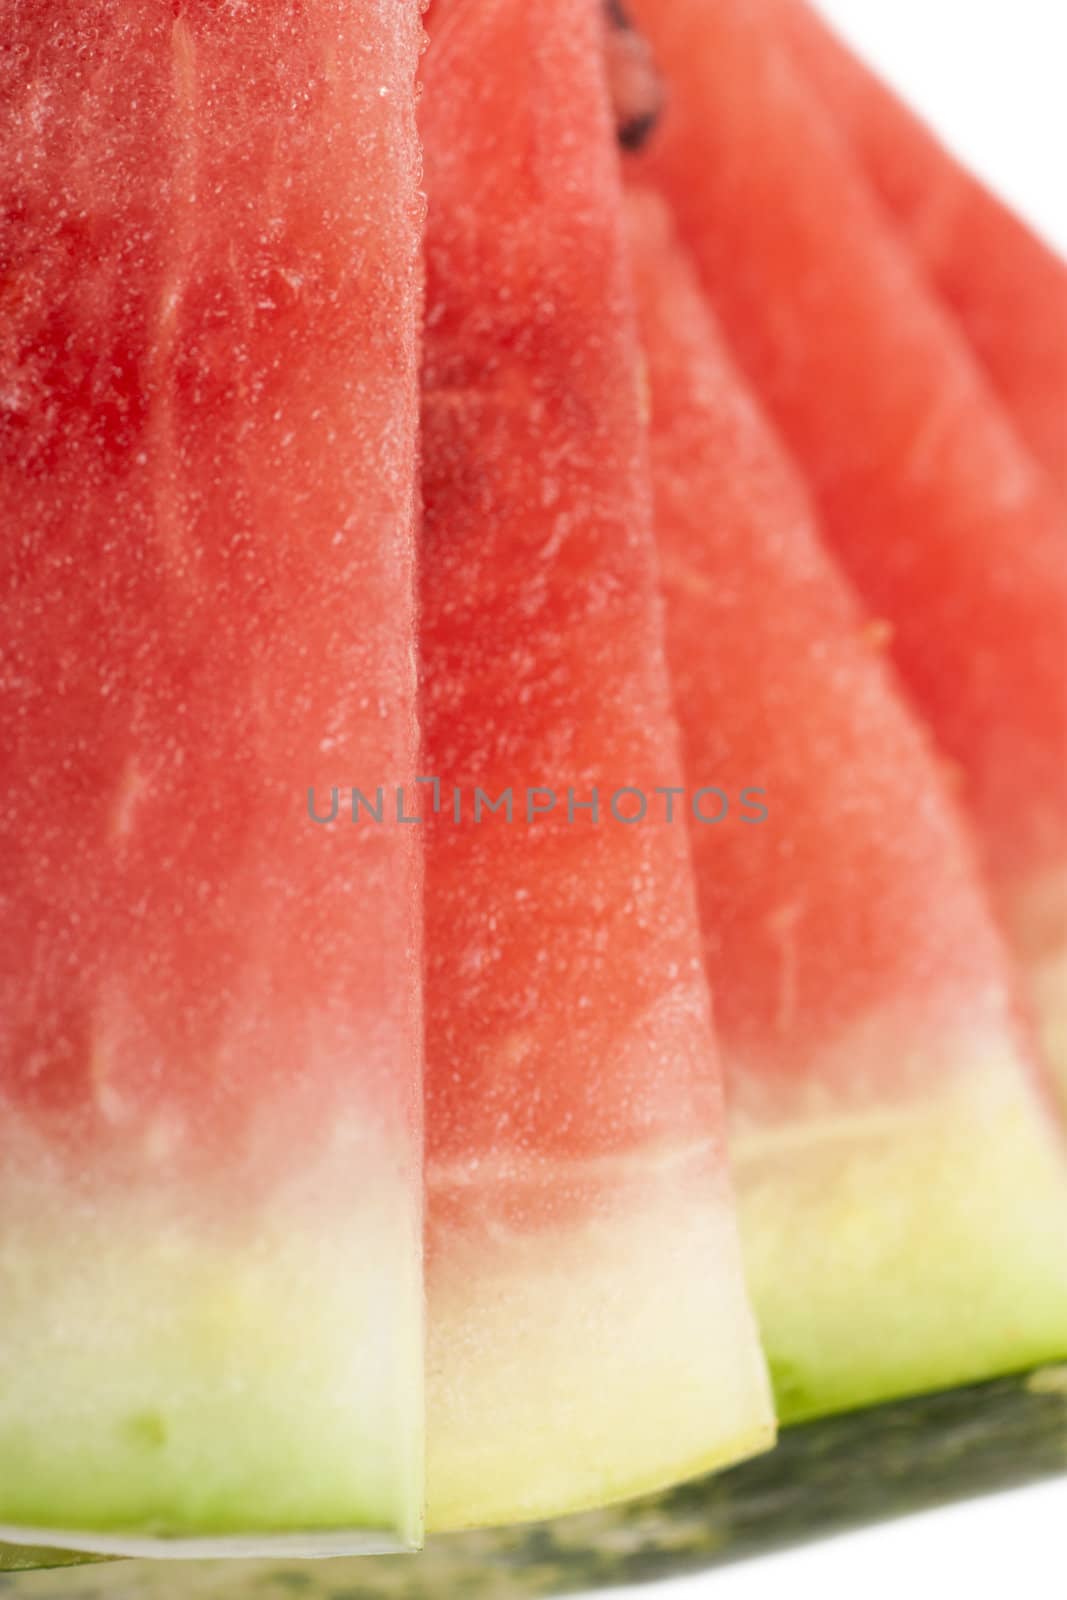 Watermelon by AGorohov